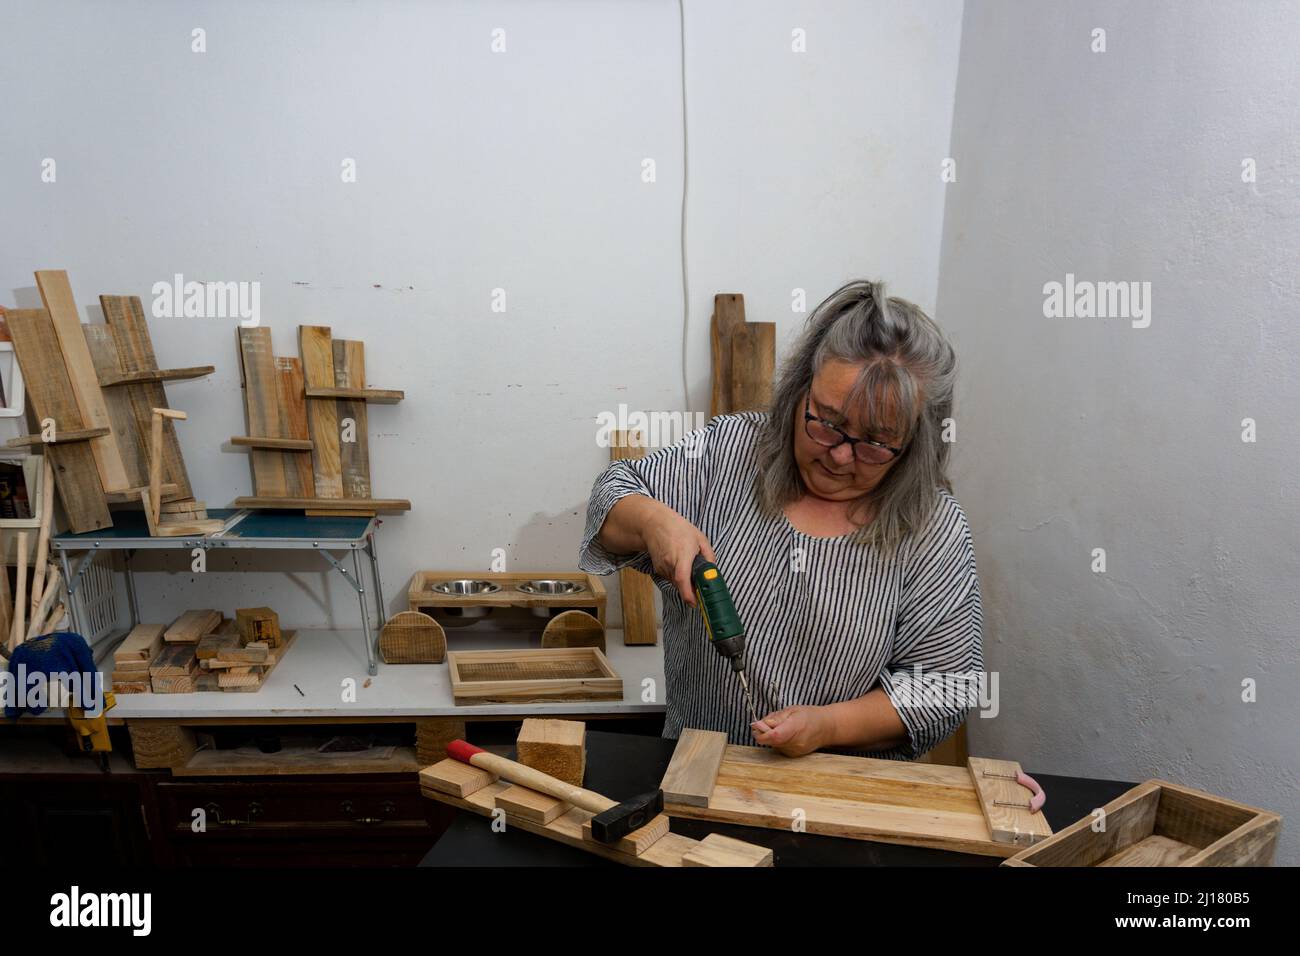 Weißhaarige Frau, die in ihrer Werkstatt aus recyceltem Holz mit verschiedenen Werkzeugen und ökologischen Materialien arbeitet.mit einem elektrischen Schraubendreher Stockfoto